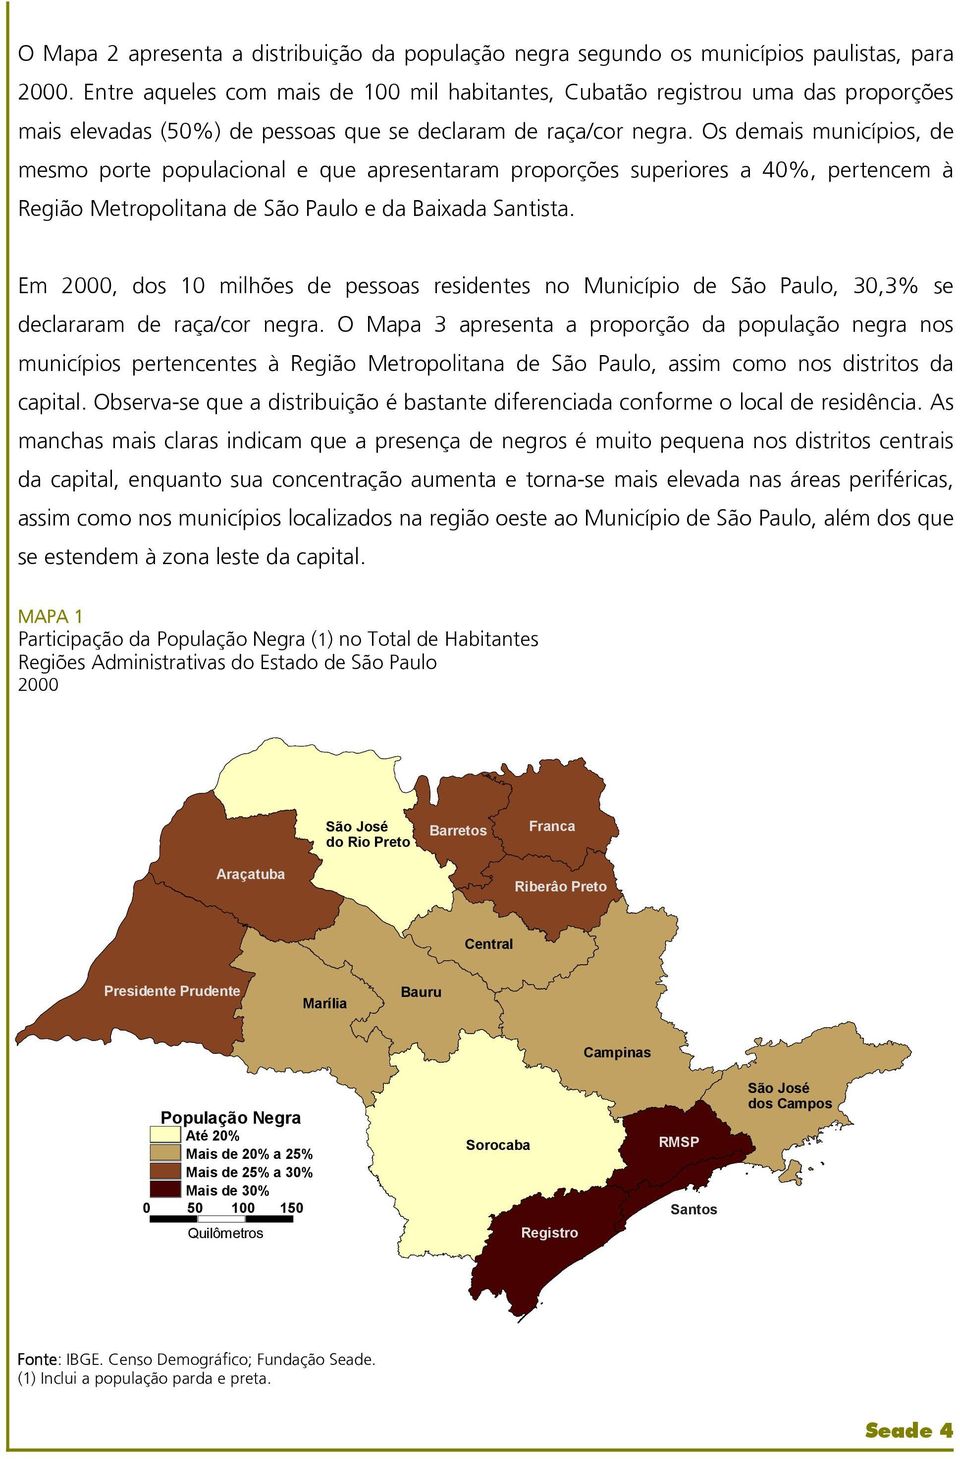 Os demais municípios, de mesmo porte populacional e que apresentaram proporções superiores a 40%, pertencem à Região Metropolitana de São Paulo e da Baixada Santista.